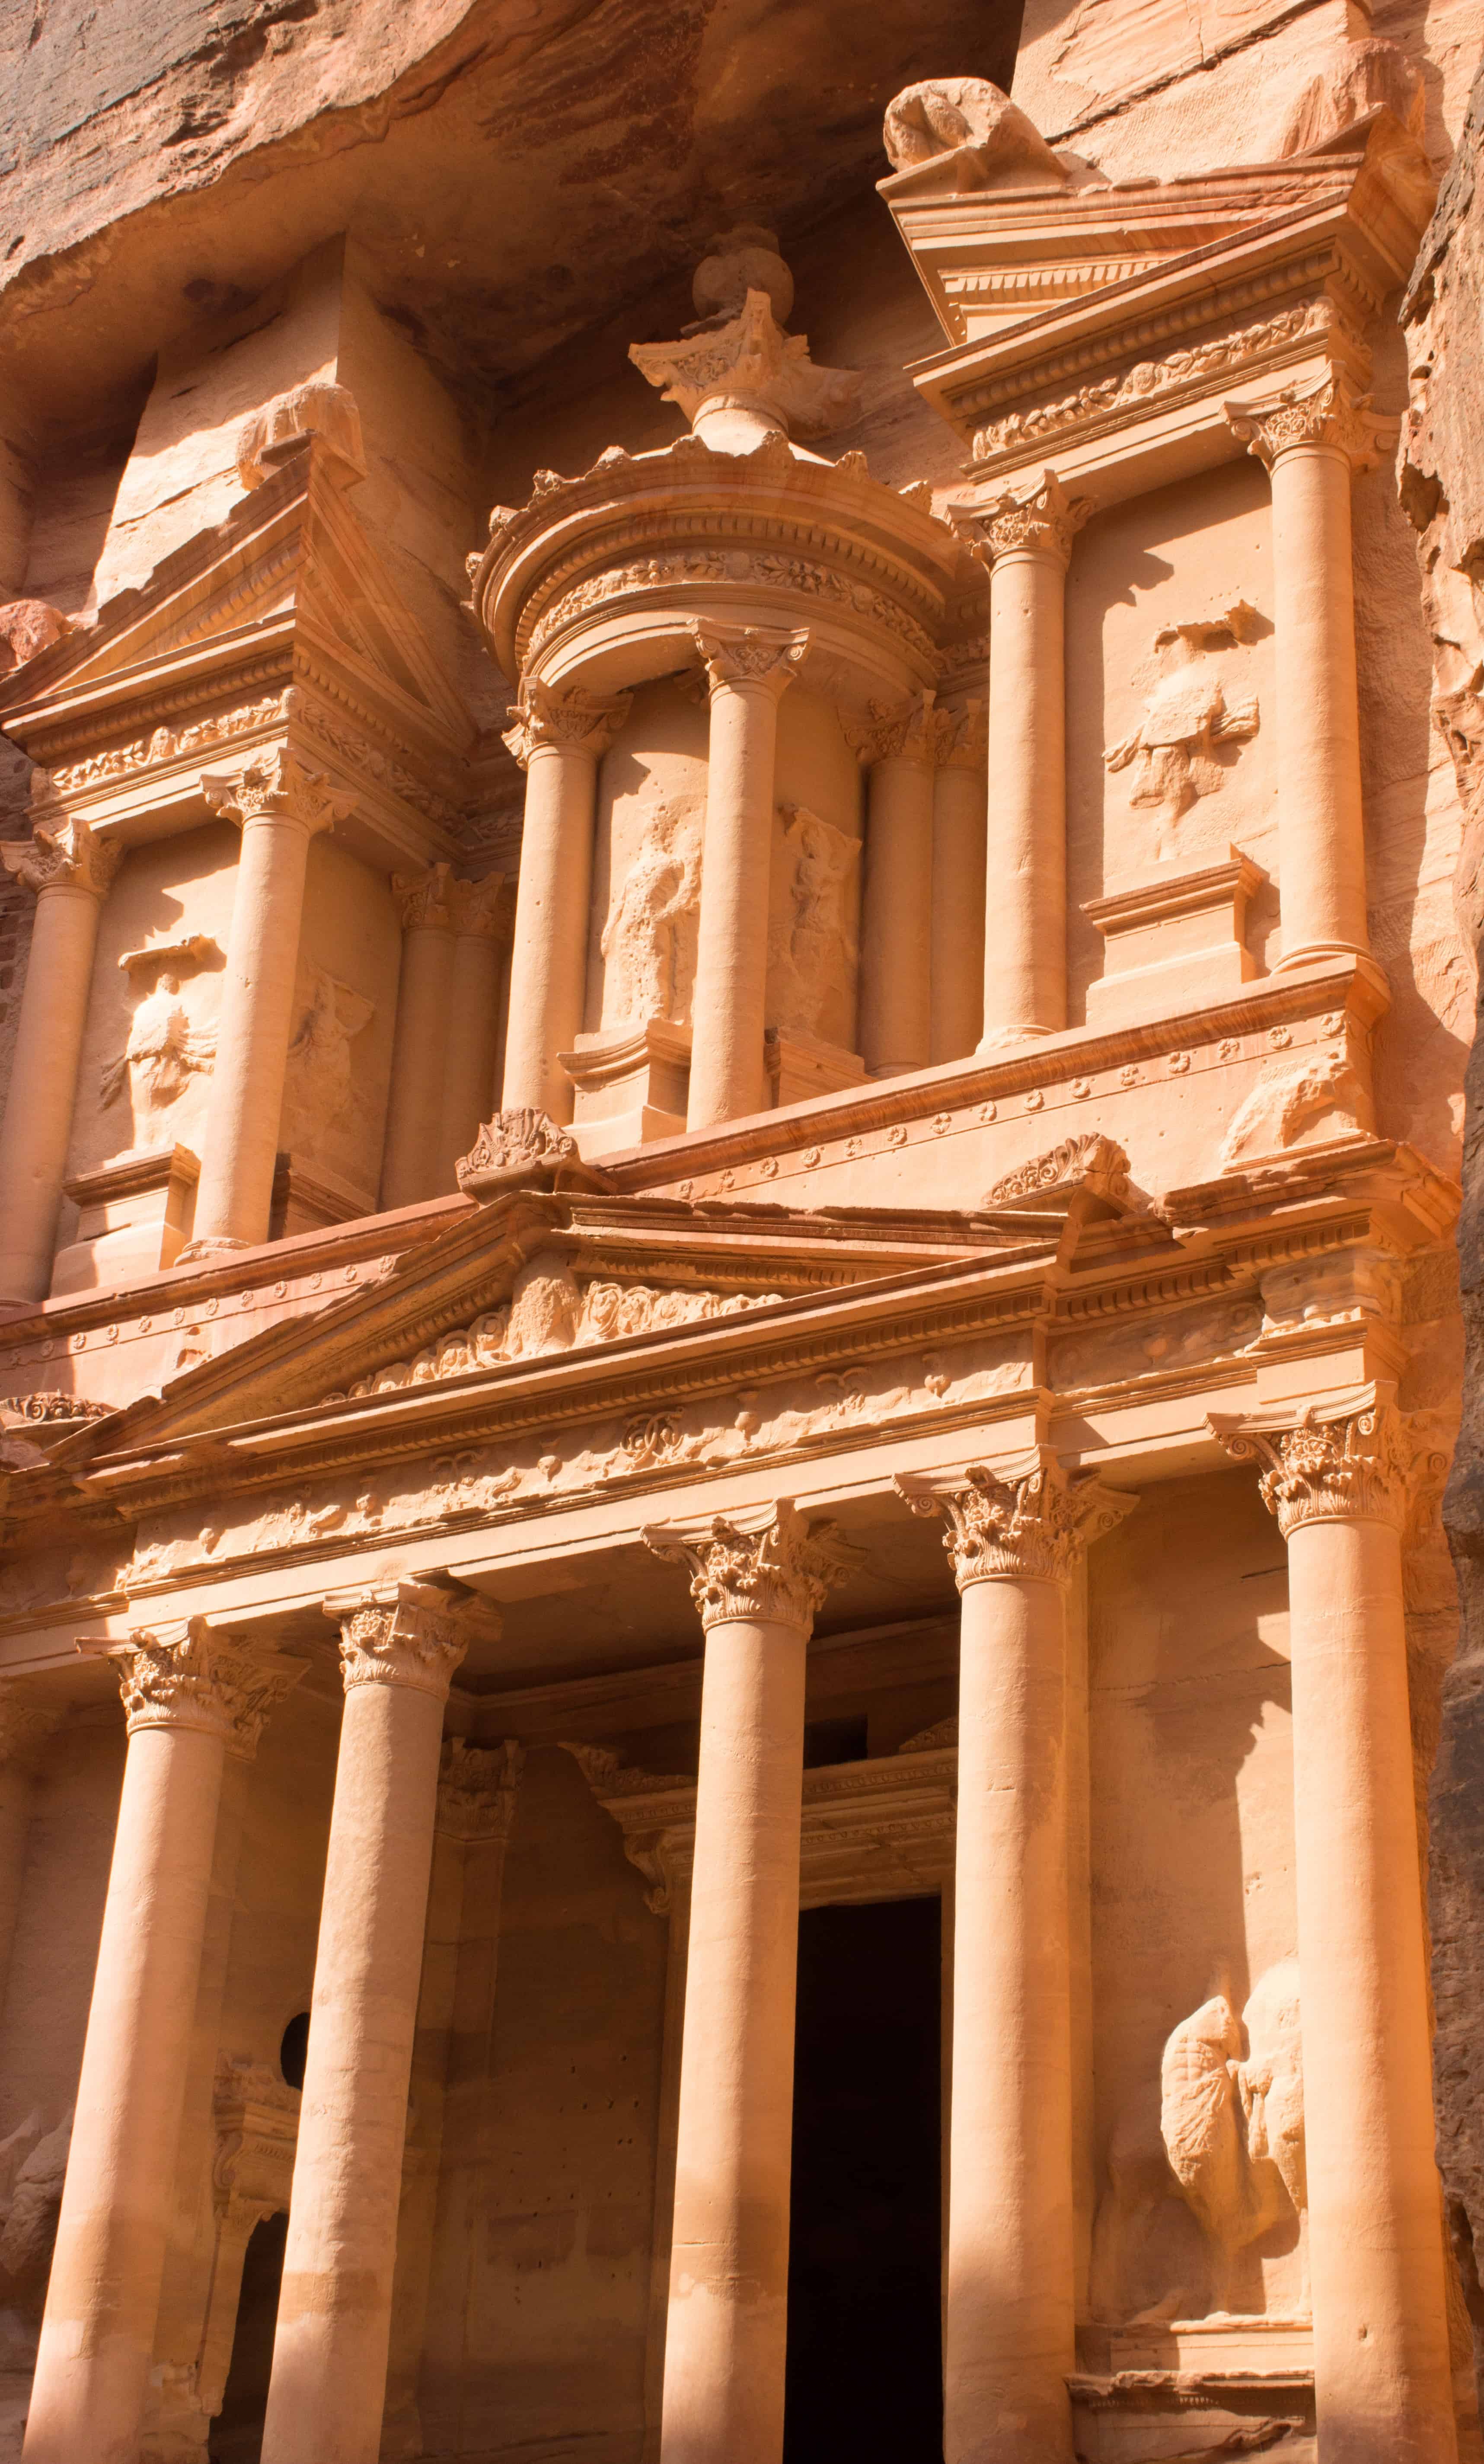 Petra's Famous Treasury in Kingdom of Jordan